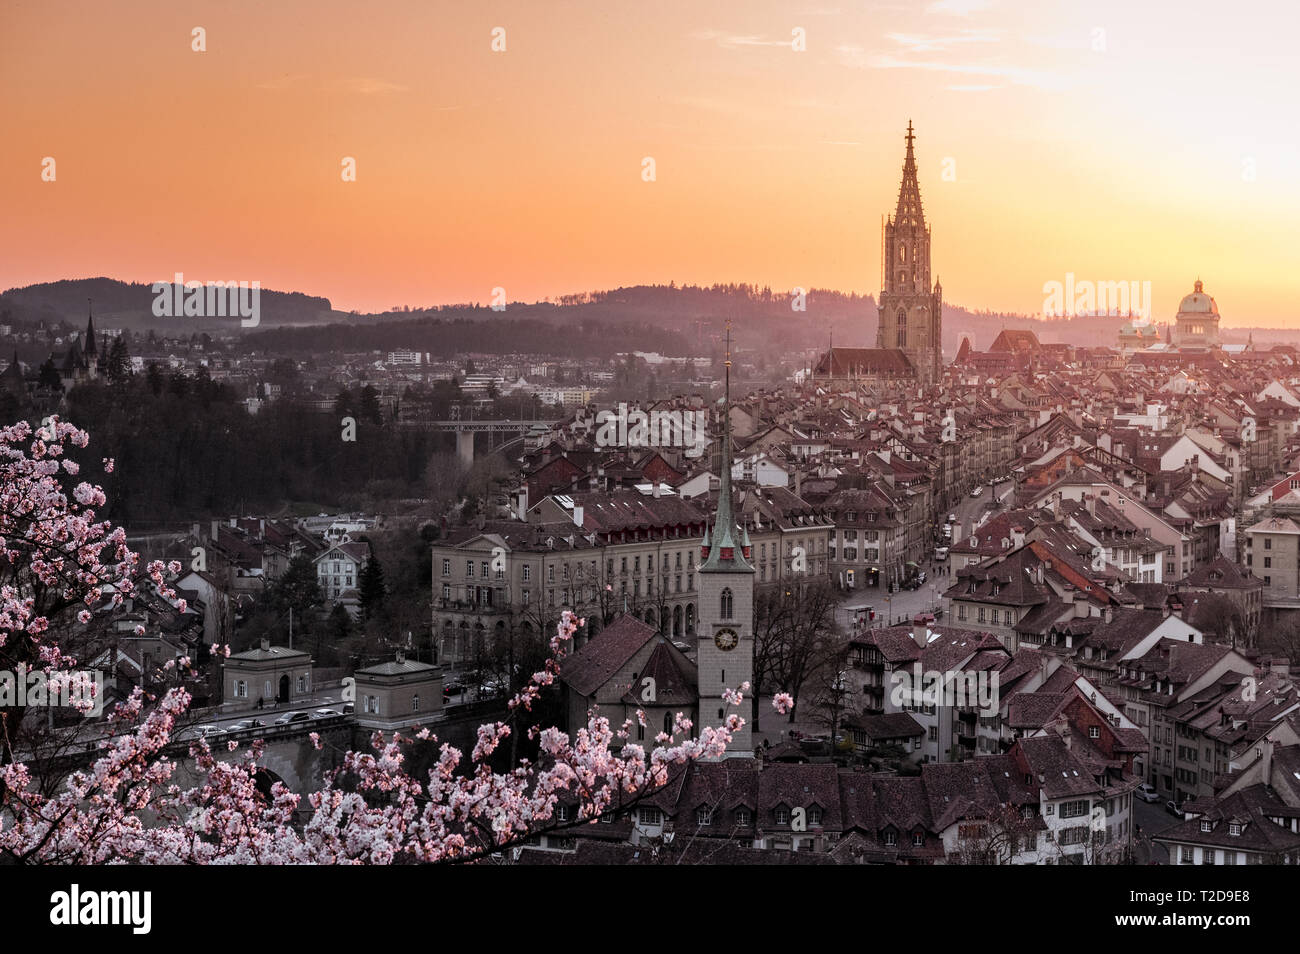 Sonnenuntergang über der Stadt Bern während Kirschblüte im Frühling mit Berner Münster und Altstadt Foto Stock